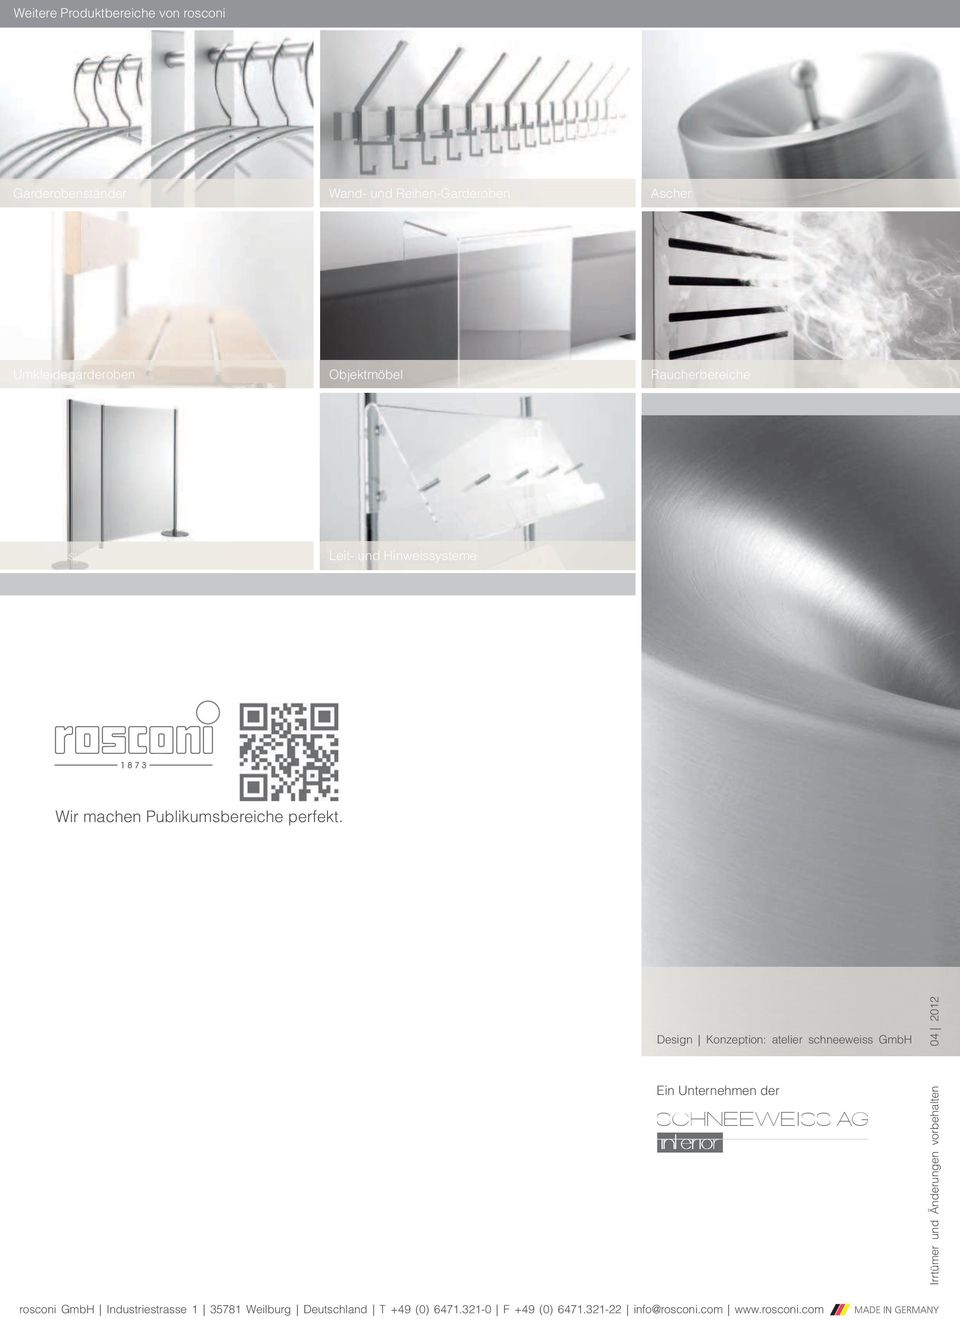 Design Konzeption: atelier schneeweiss GmbH 04 2012 Ein Unternehmen der SCHNEEWEISS AG interior Irrtümer und Änderungen